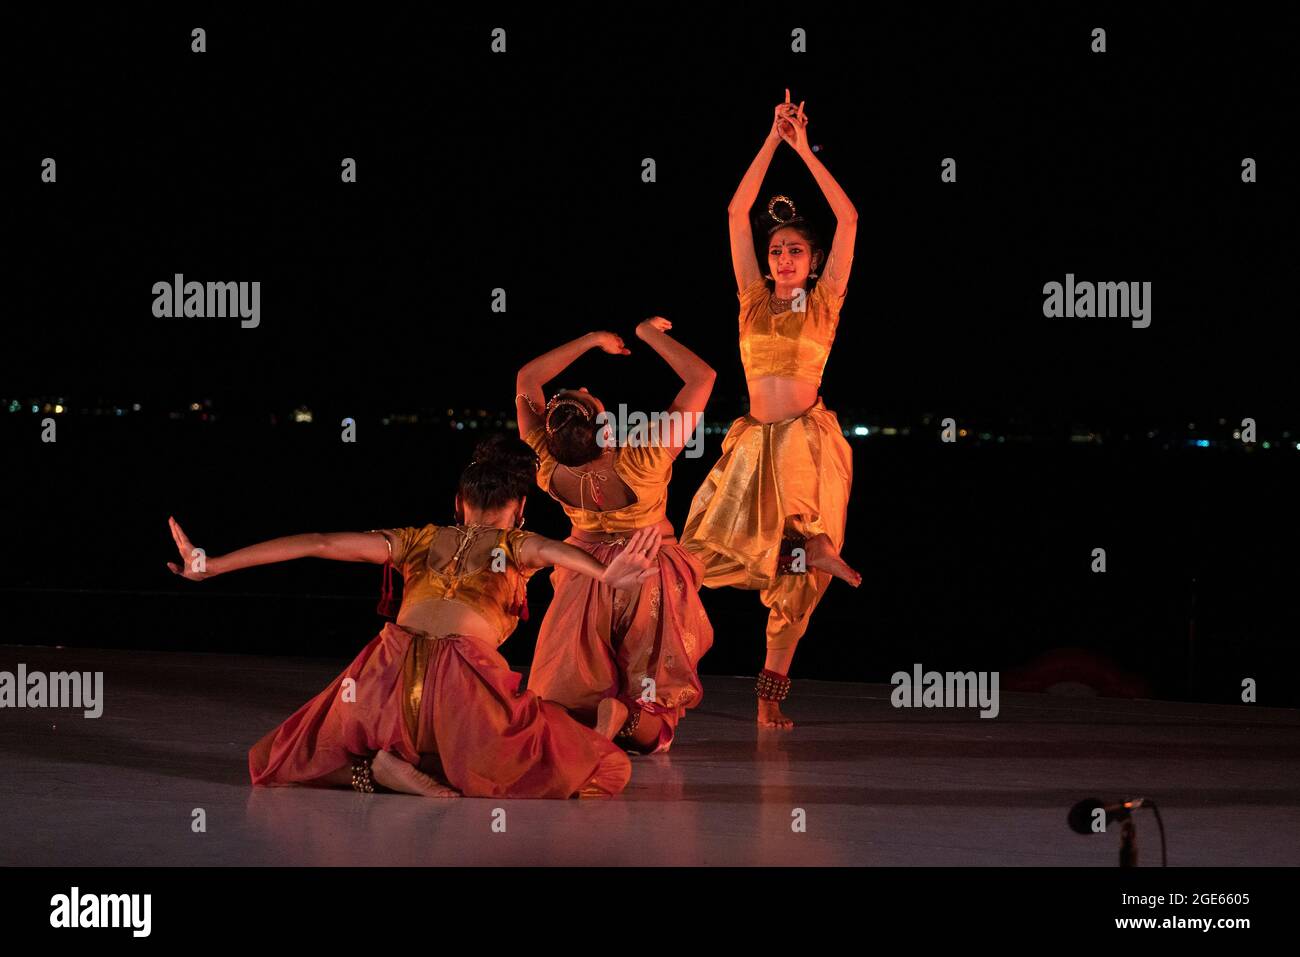 Anlässlich der Gründung Indiens wurde beim Battery Dance Festival in New York City ein Tanz in Kuchipudi, einem klassischen südindischen Tanzstil, aufgeführt. Stockfoto